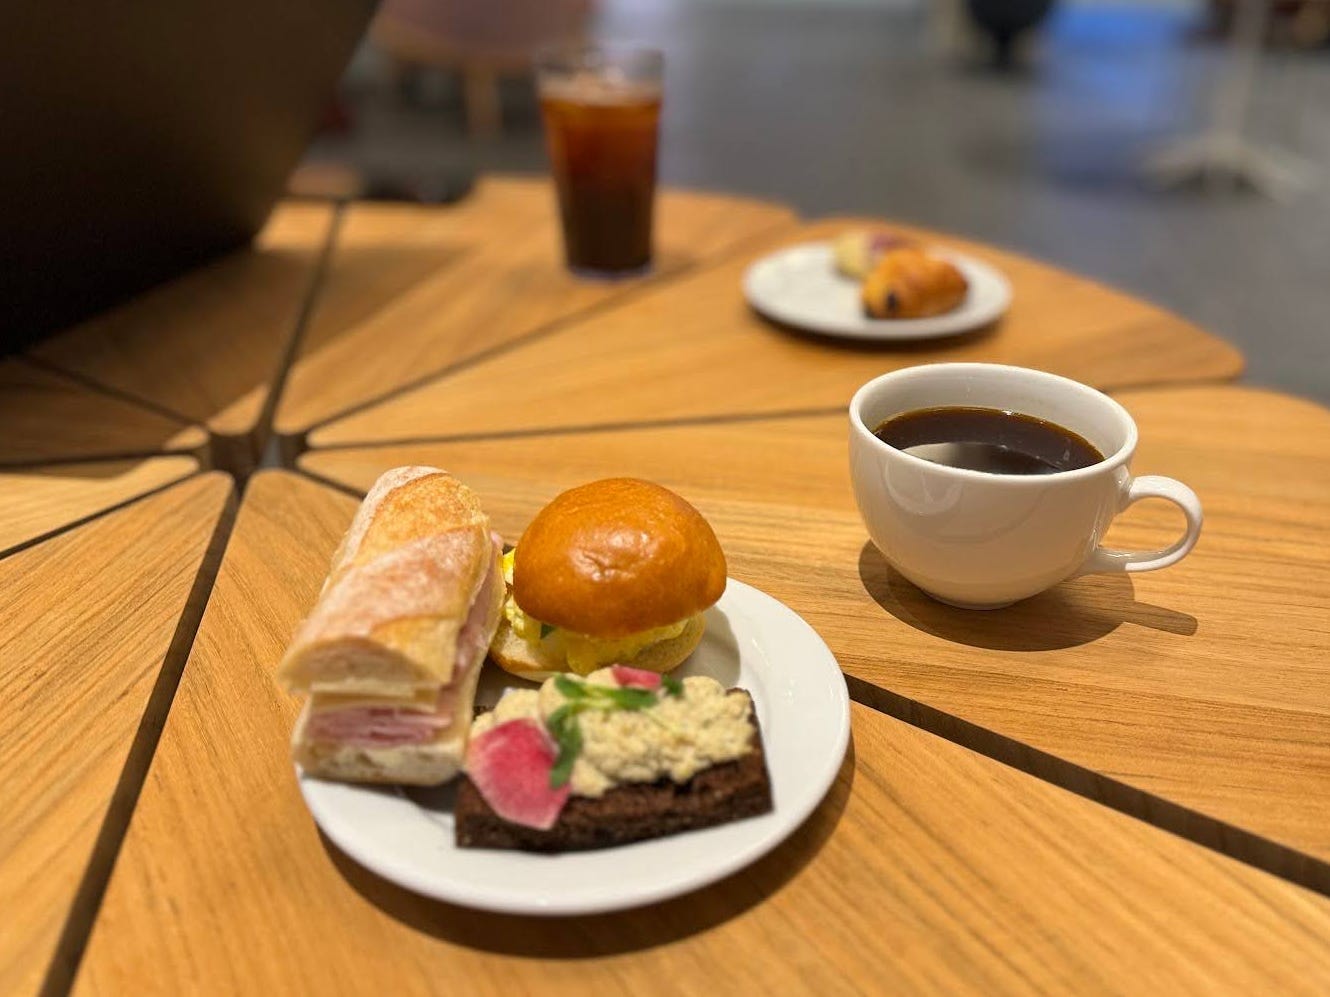 Ein Americano in einer Tasse und ein Mini-Eiersalat-Sandwich, ein Mini-Schinken-Schweizer-Sandwich und eine geräucherte Seeforellen-Tartine auf einem Teller.